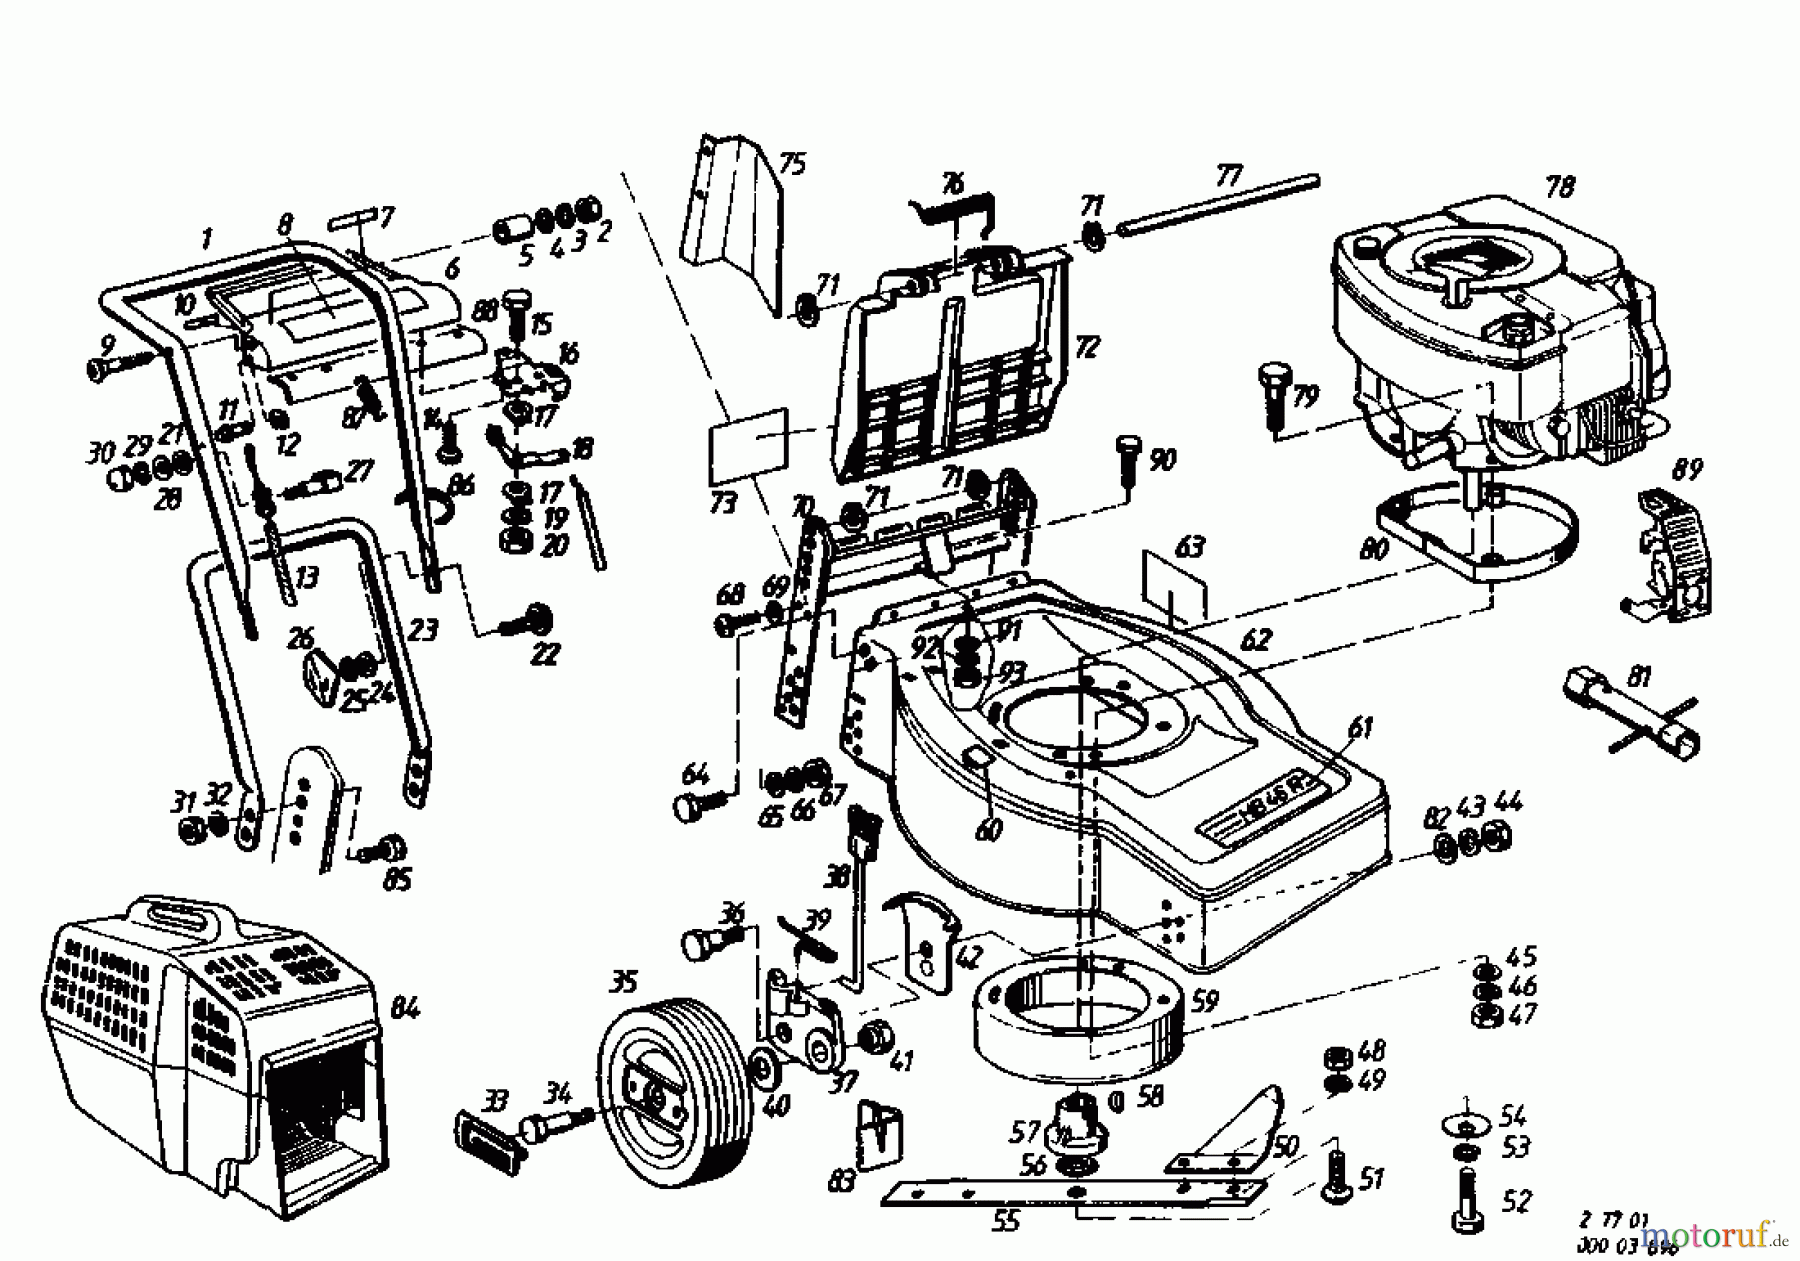  Gutbrod Motormäher mit Antrieb HB 46 R 02877.01  (1985) Grundgerät